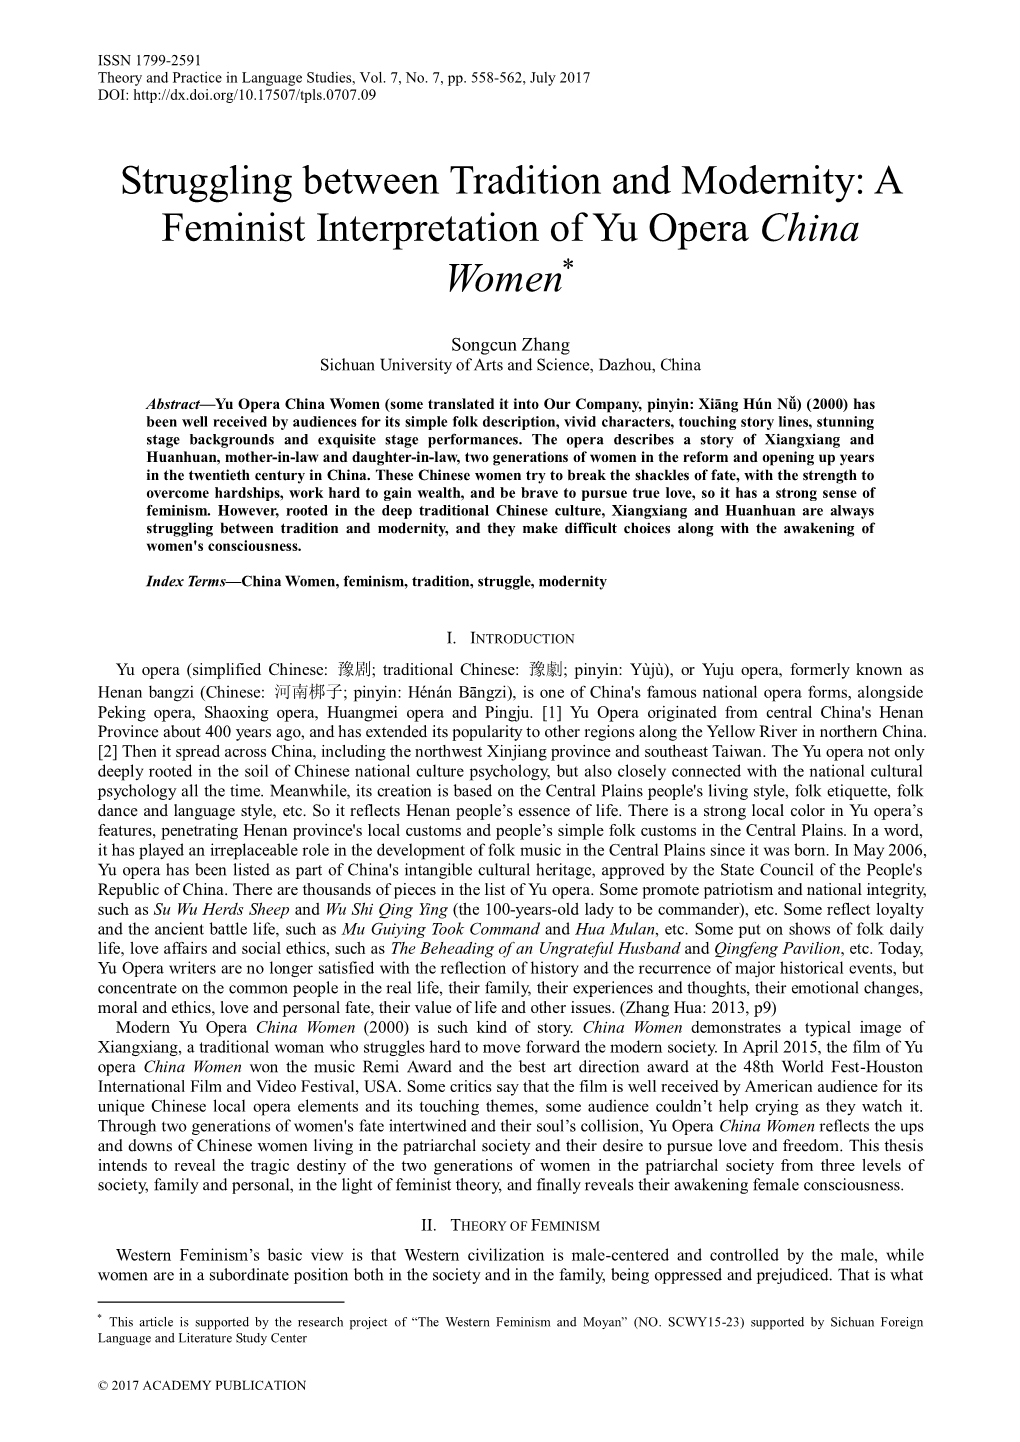 A Feminist Interpretation of Yu Opera China Women